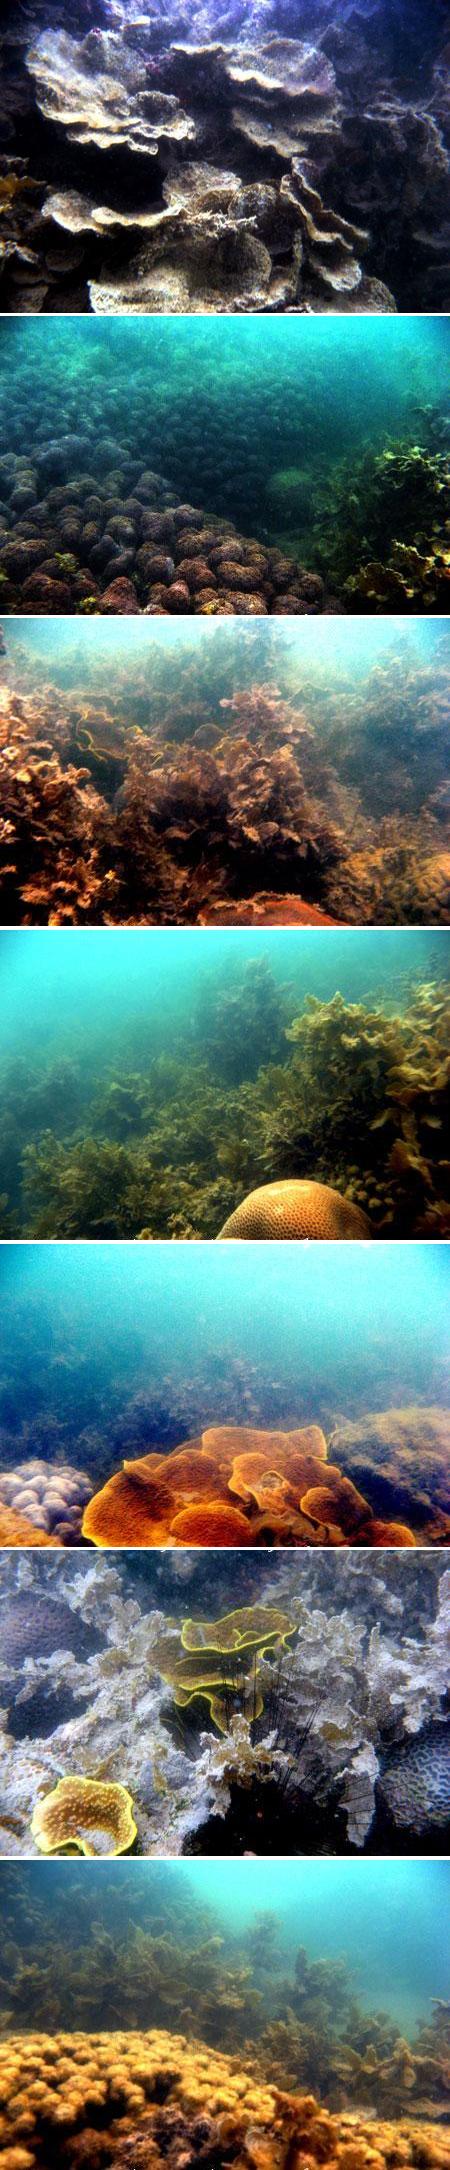 Terumbu karang rusak di Kabupaten Bangka Selatan (2007)